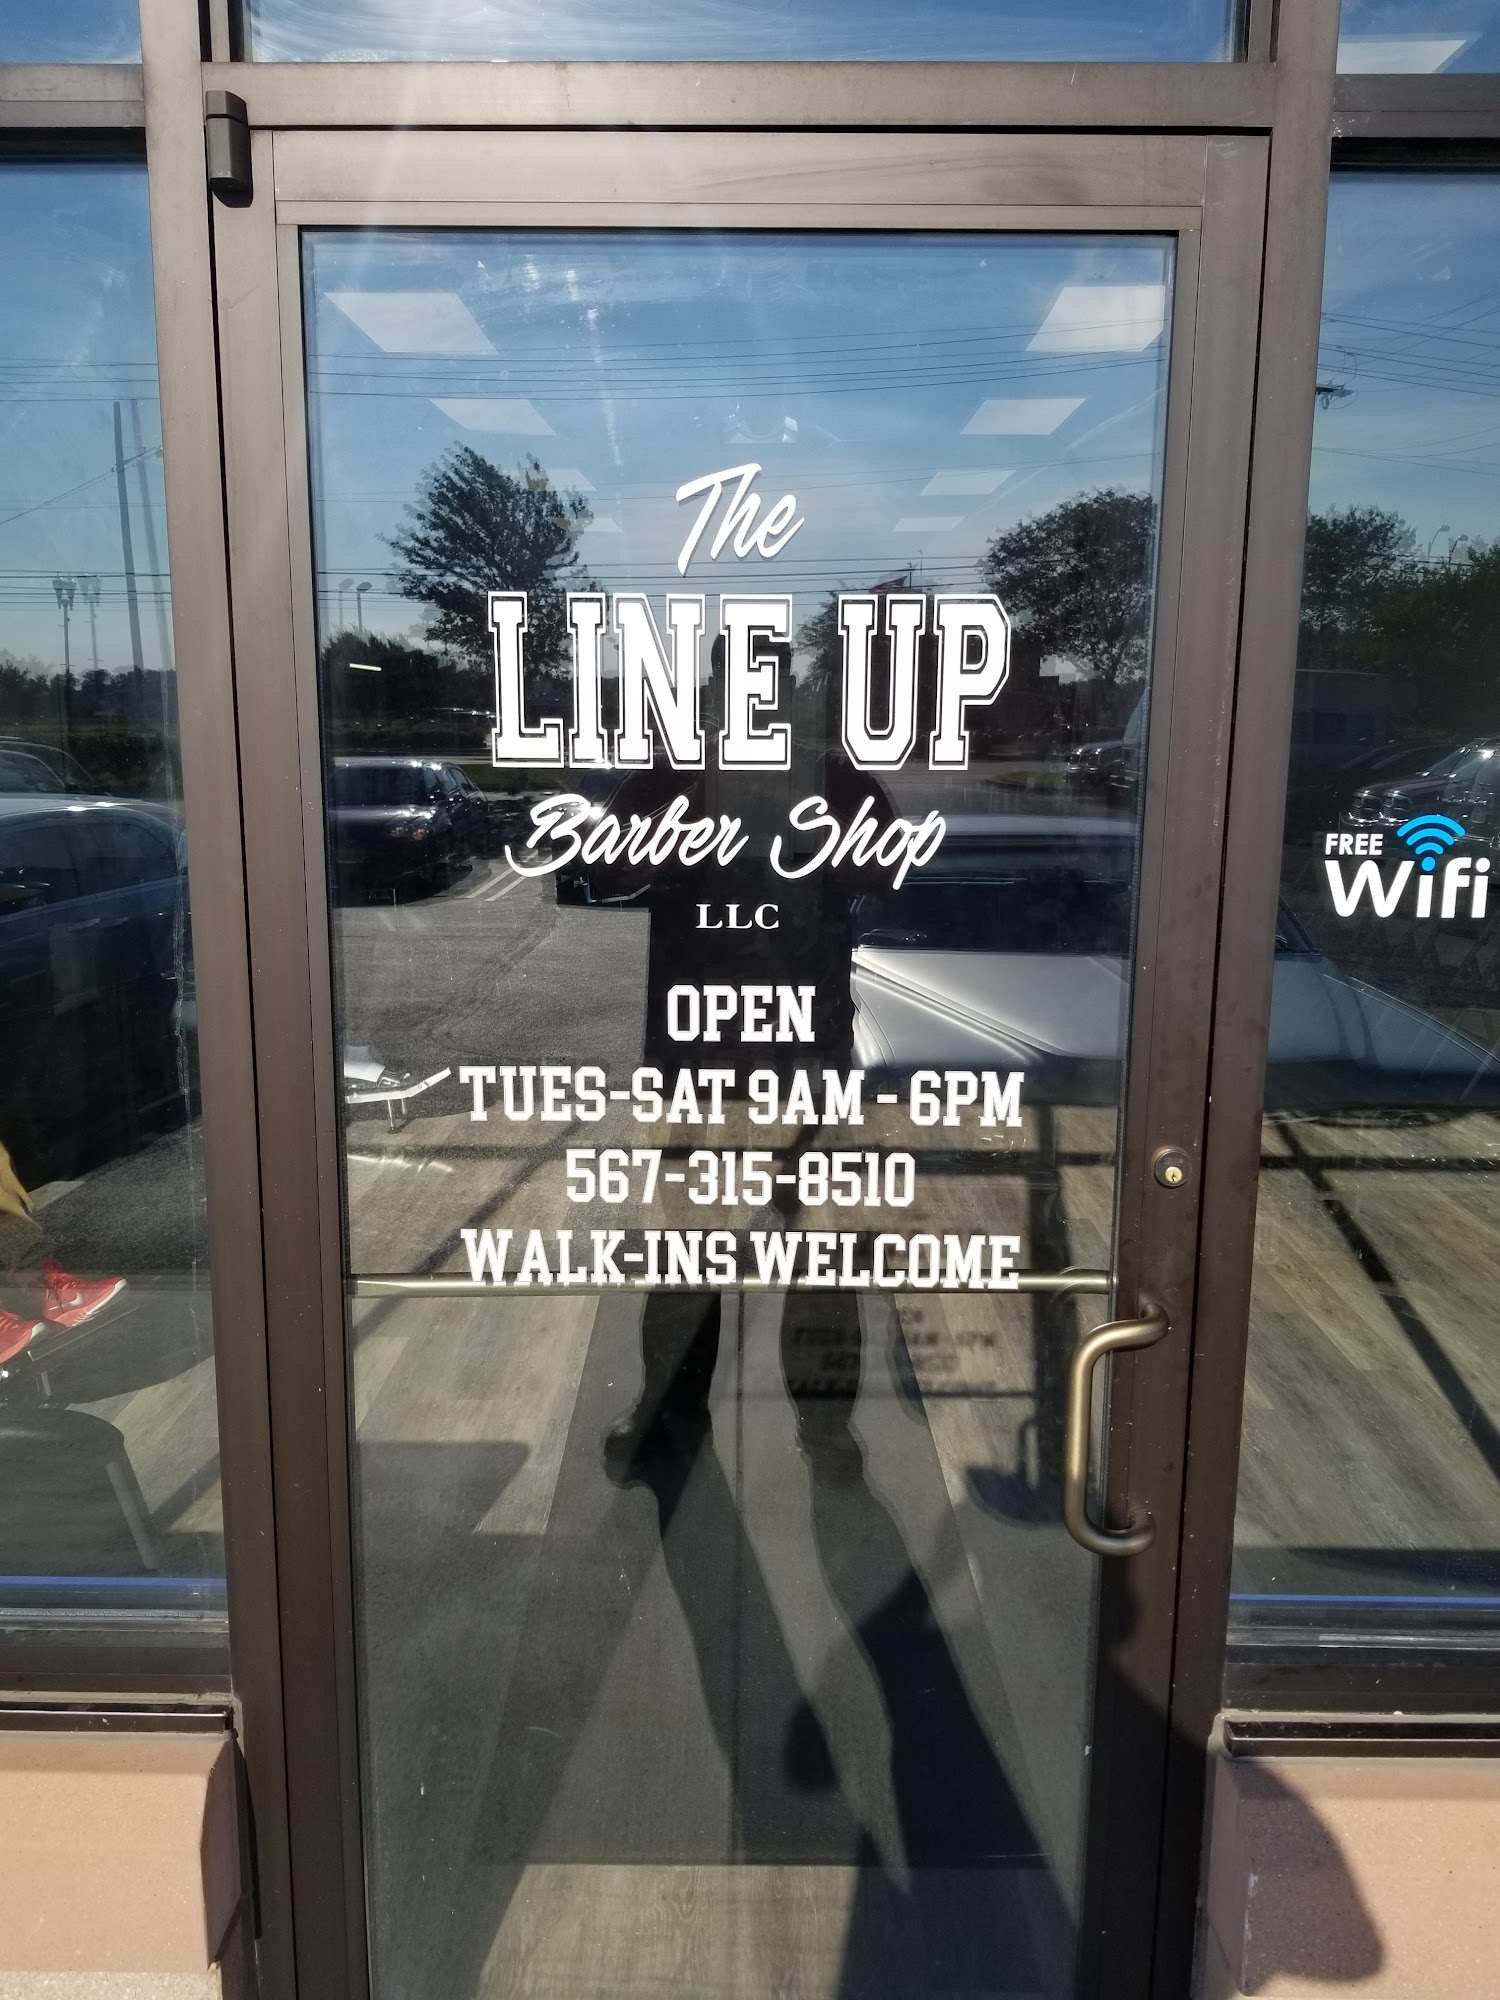 The Line Up Barber Shop LLC.